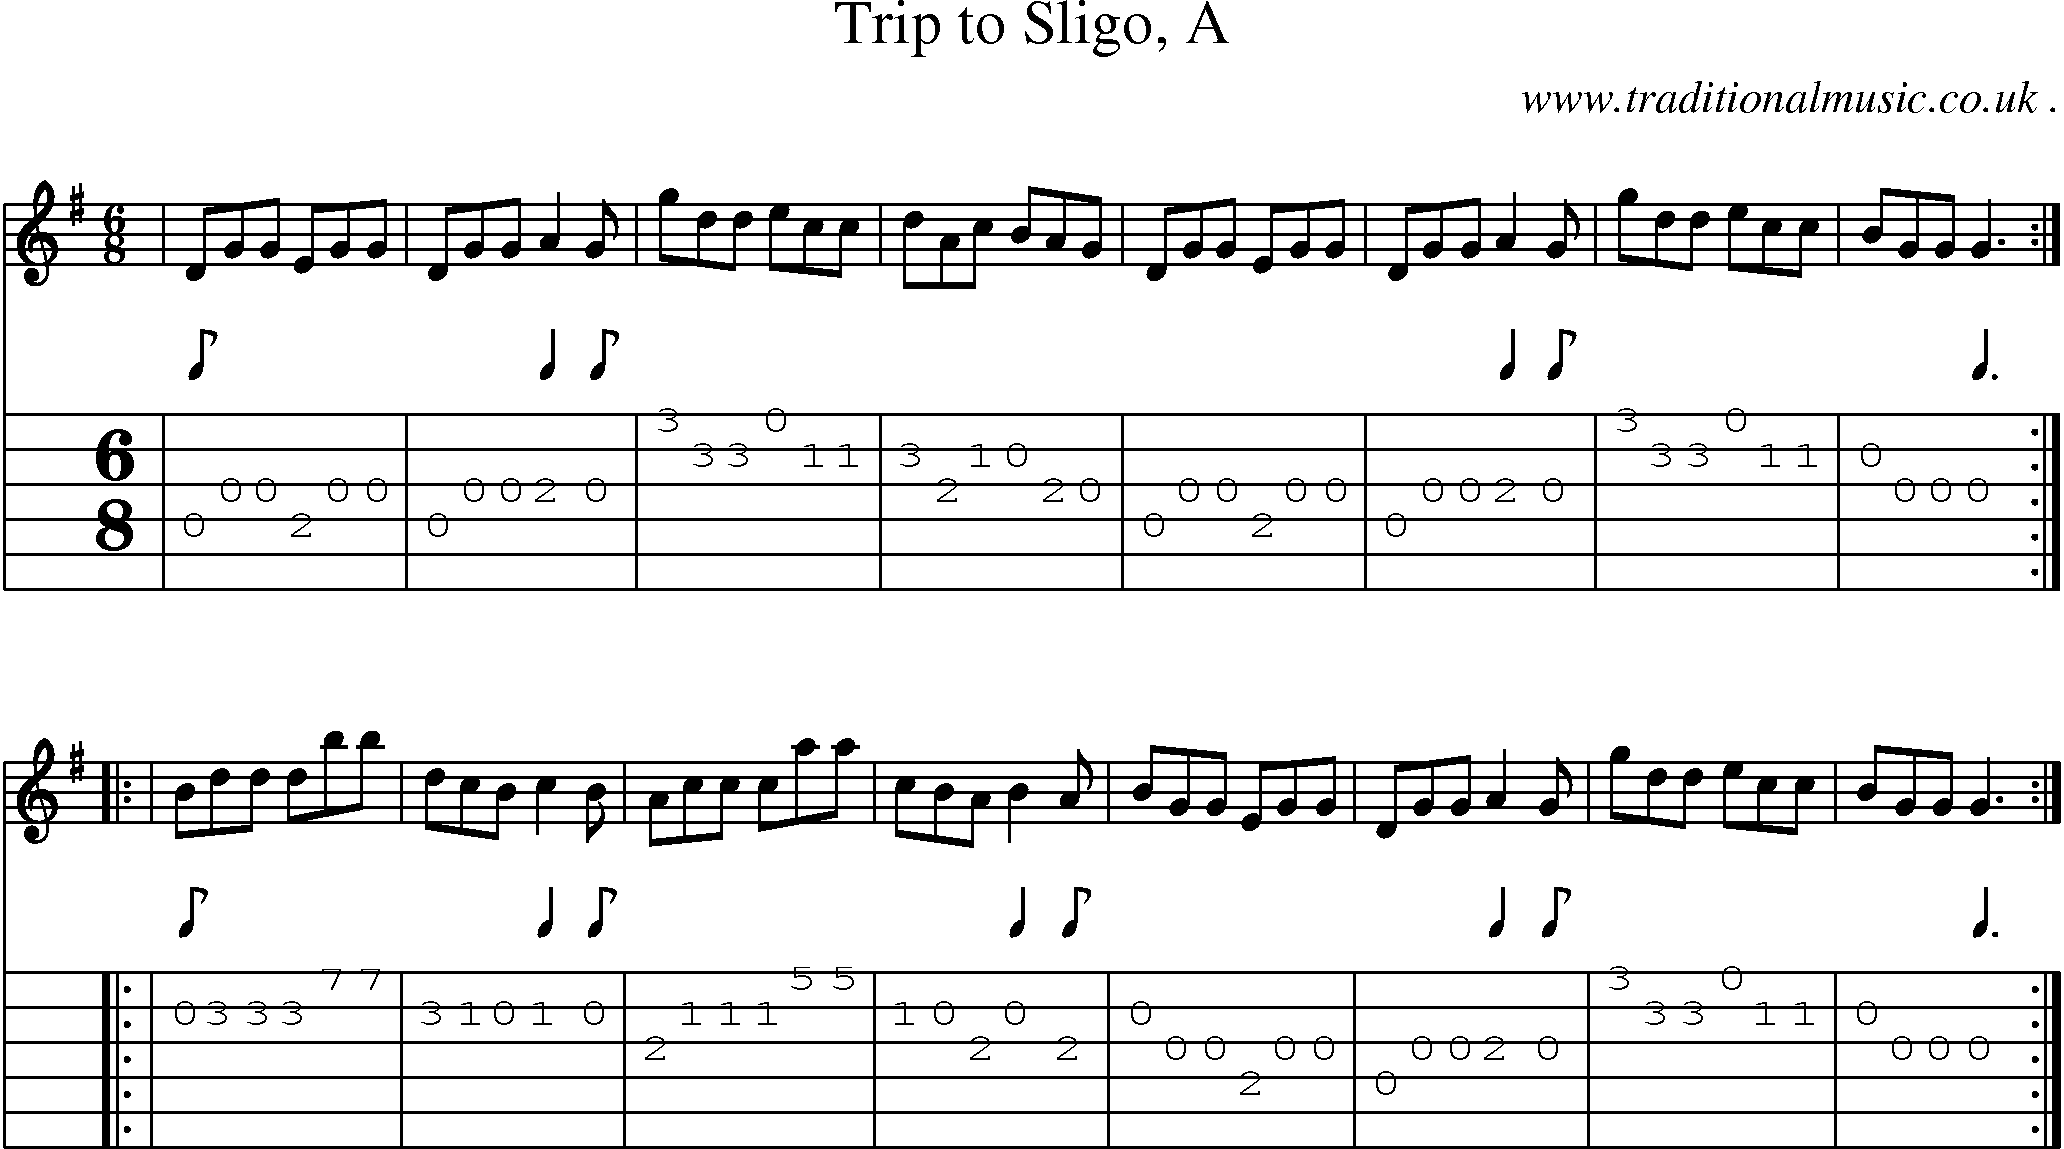 Sheet-music  score, Chords and Guitar Tabs for Trip To Sligo A